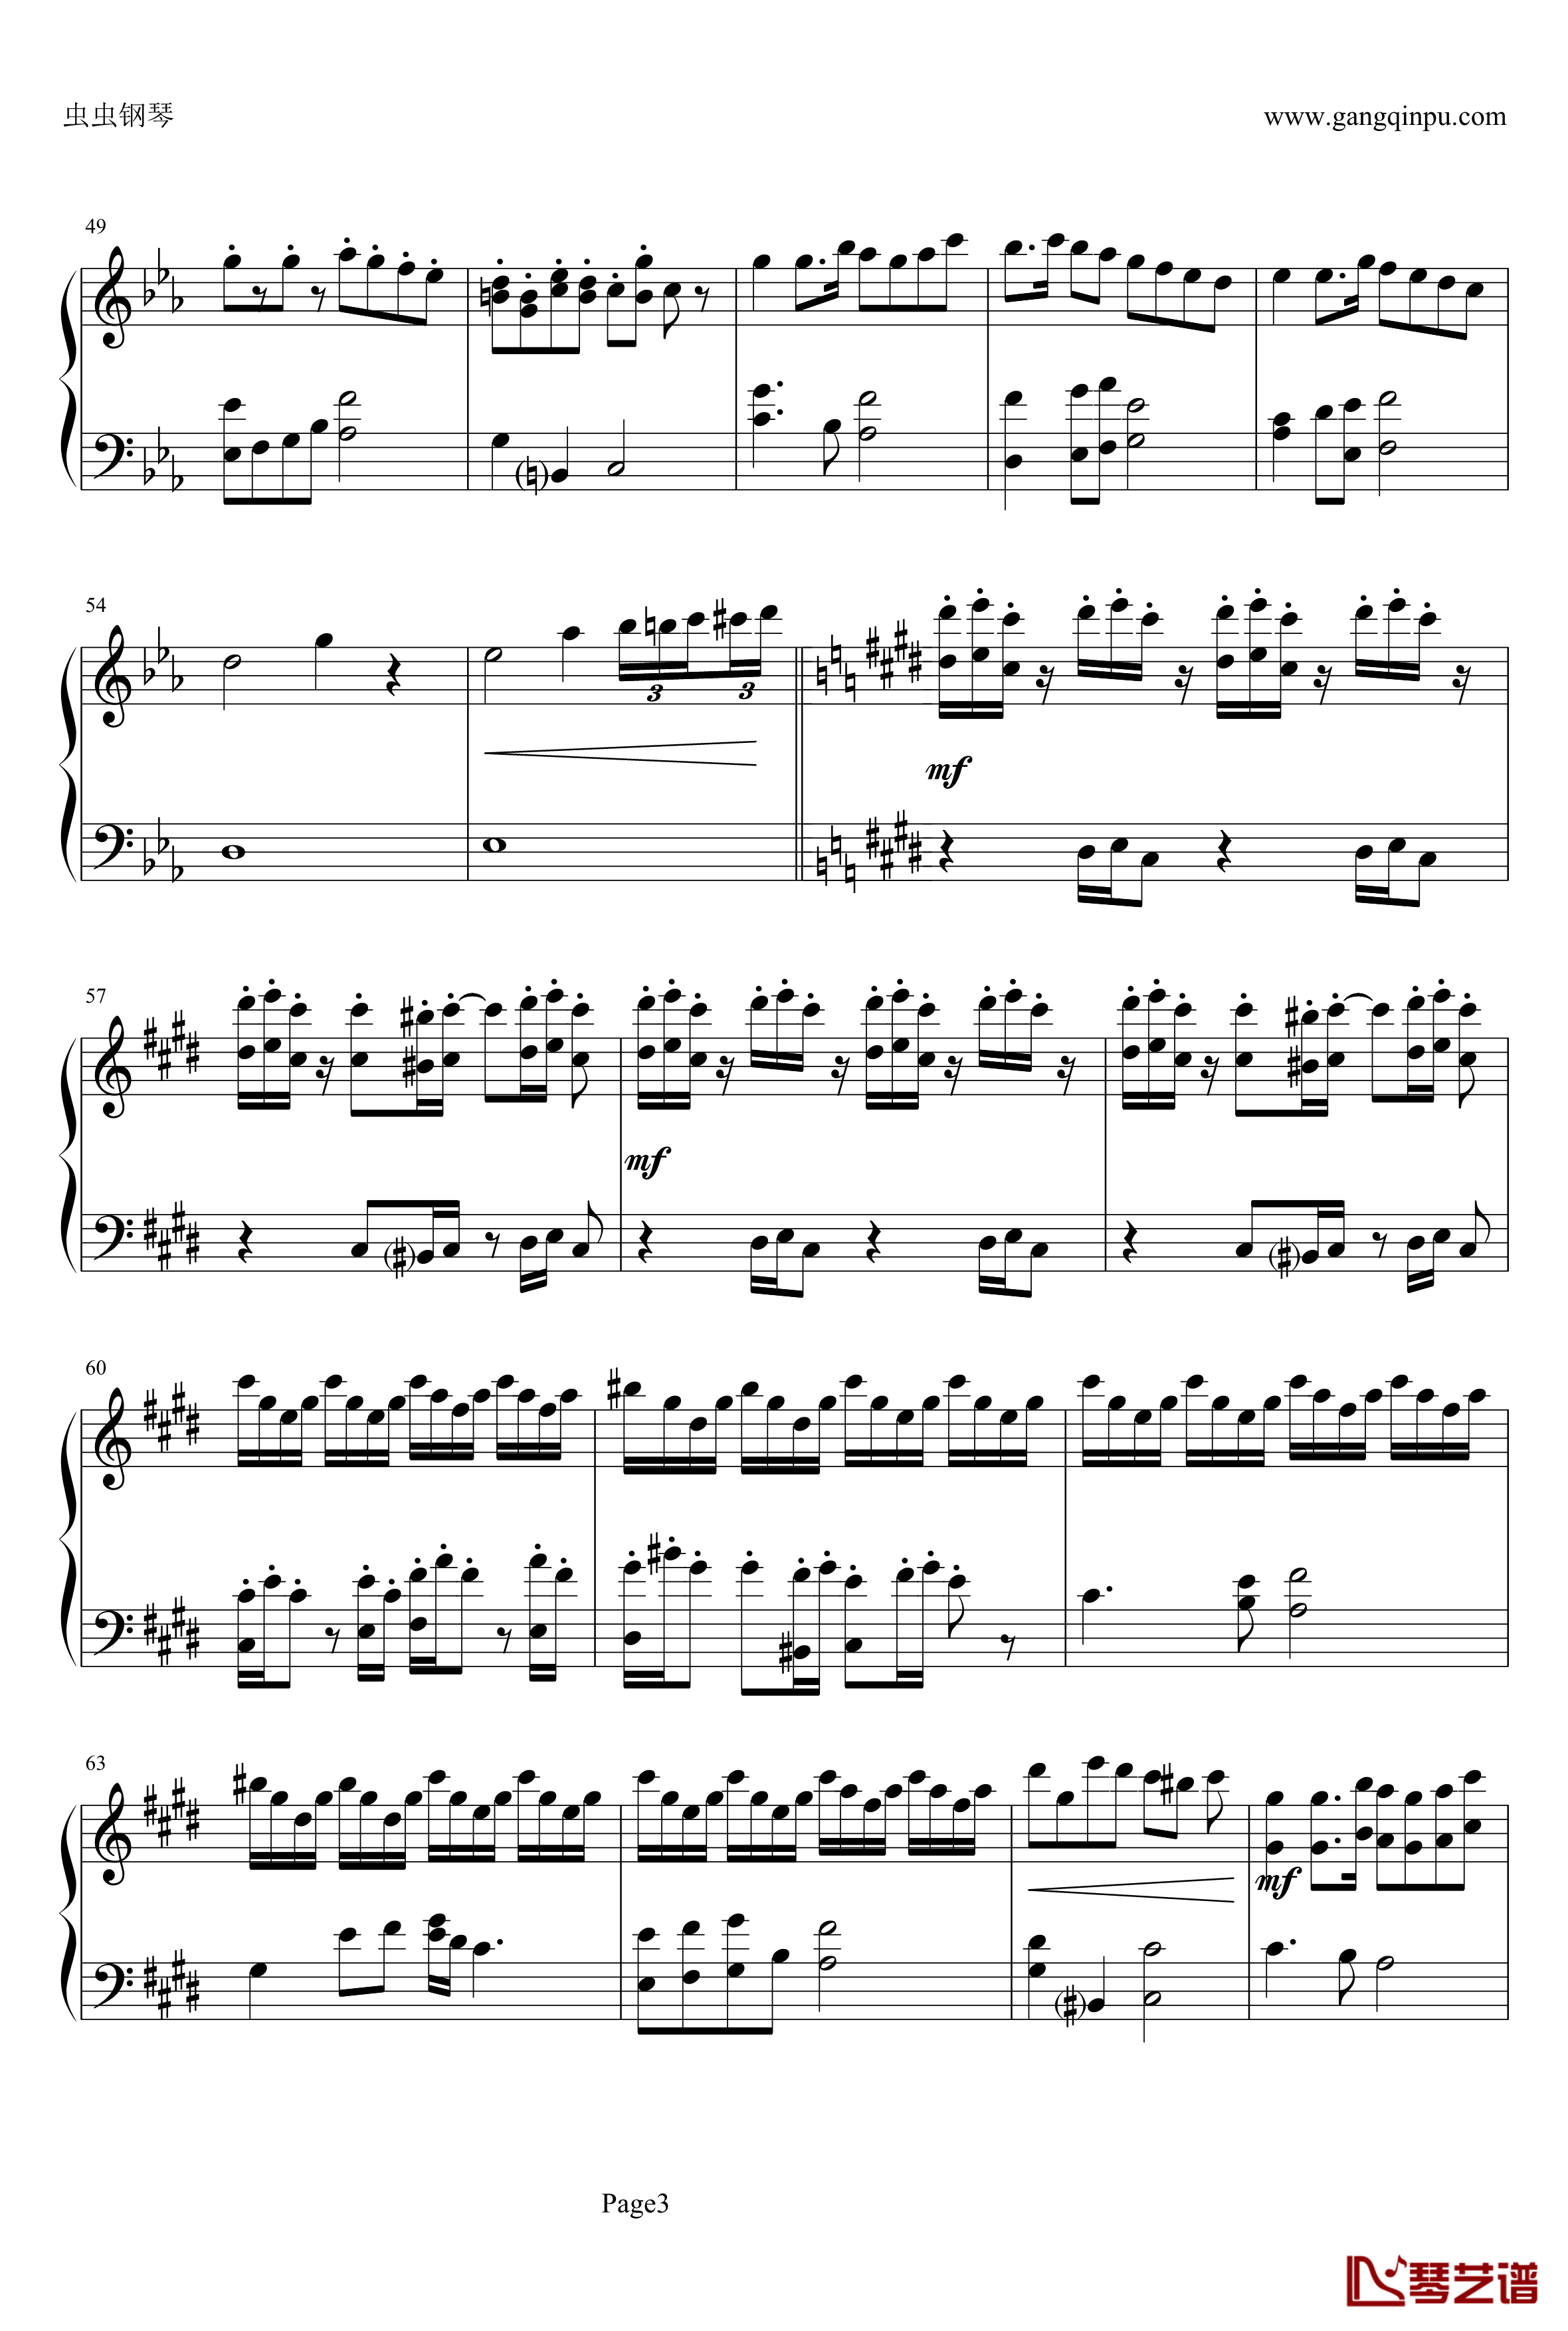 克罗地亚狂想曲弦乐钢琴谱-马克西姆-Maksim·Mrvica3